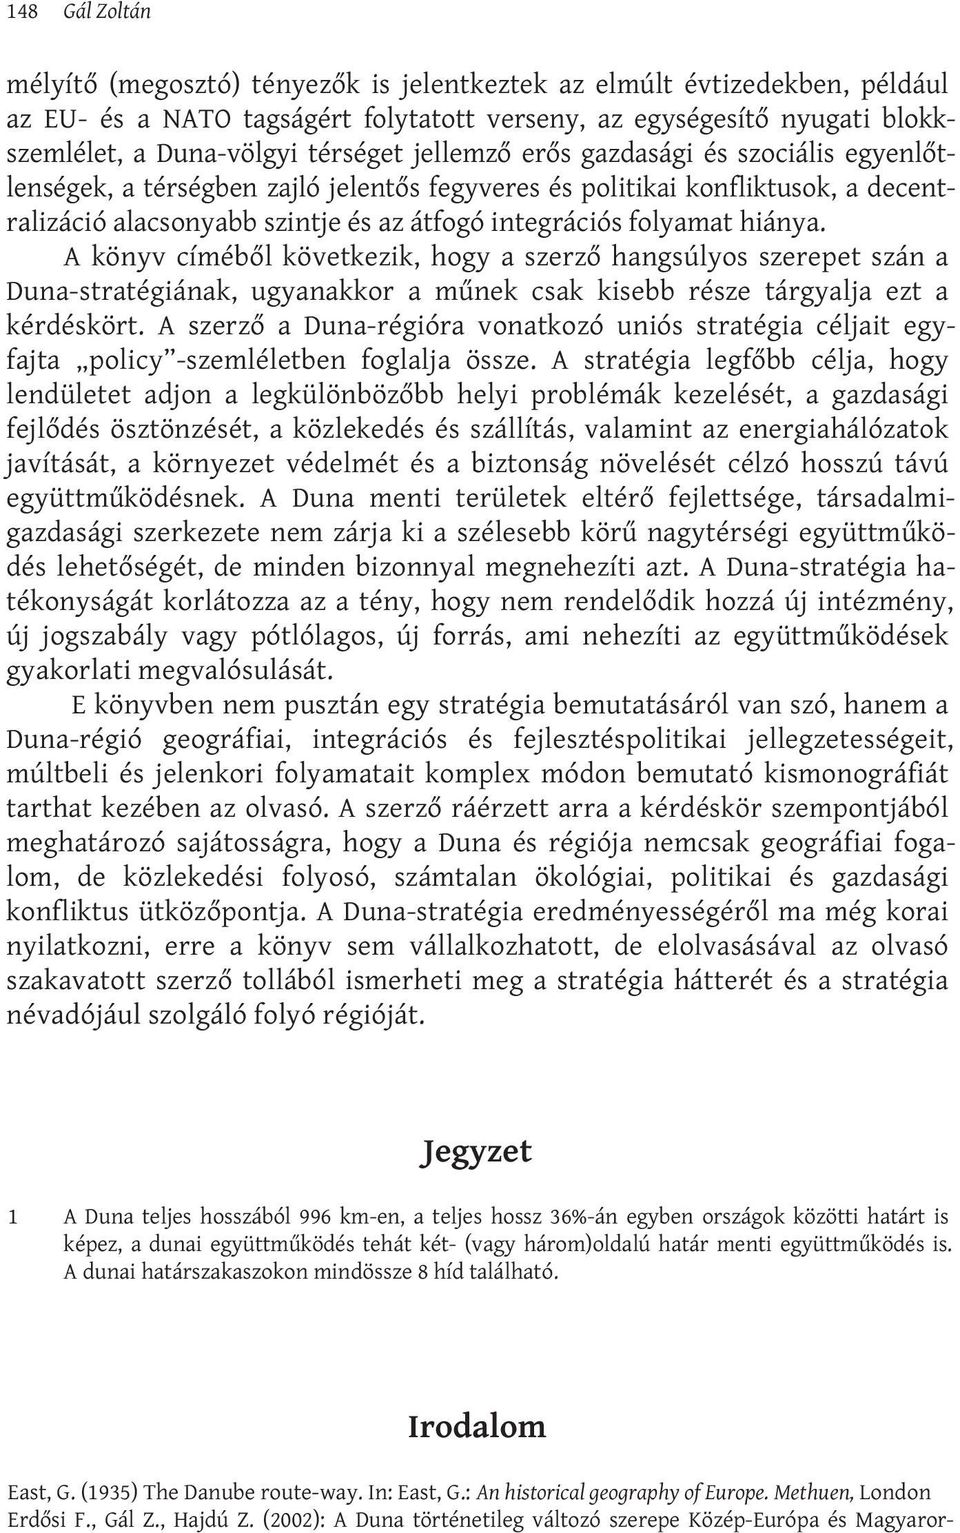 A könyv címéből következik, hogy a szerző hangsúlyos szerepet szán a Duna-stratégiának, ugyanakkor a műnek csak kisebb része tárgyalja ezt a kérdéskört.